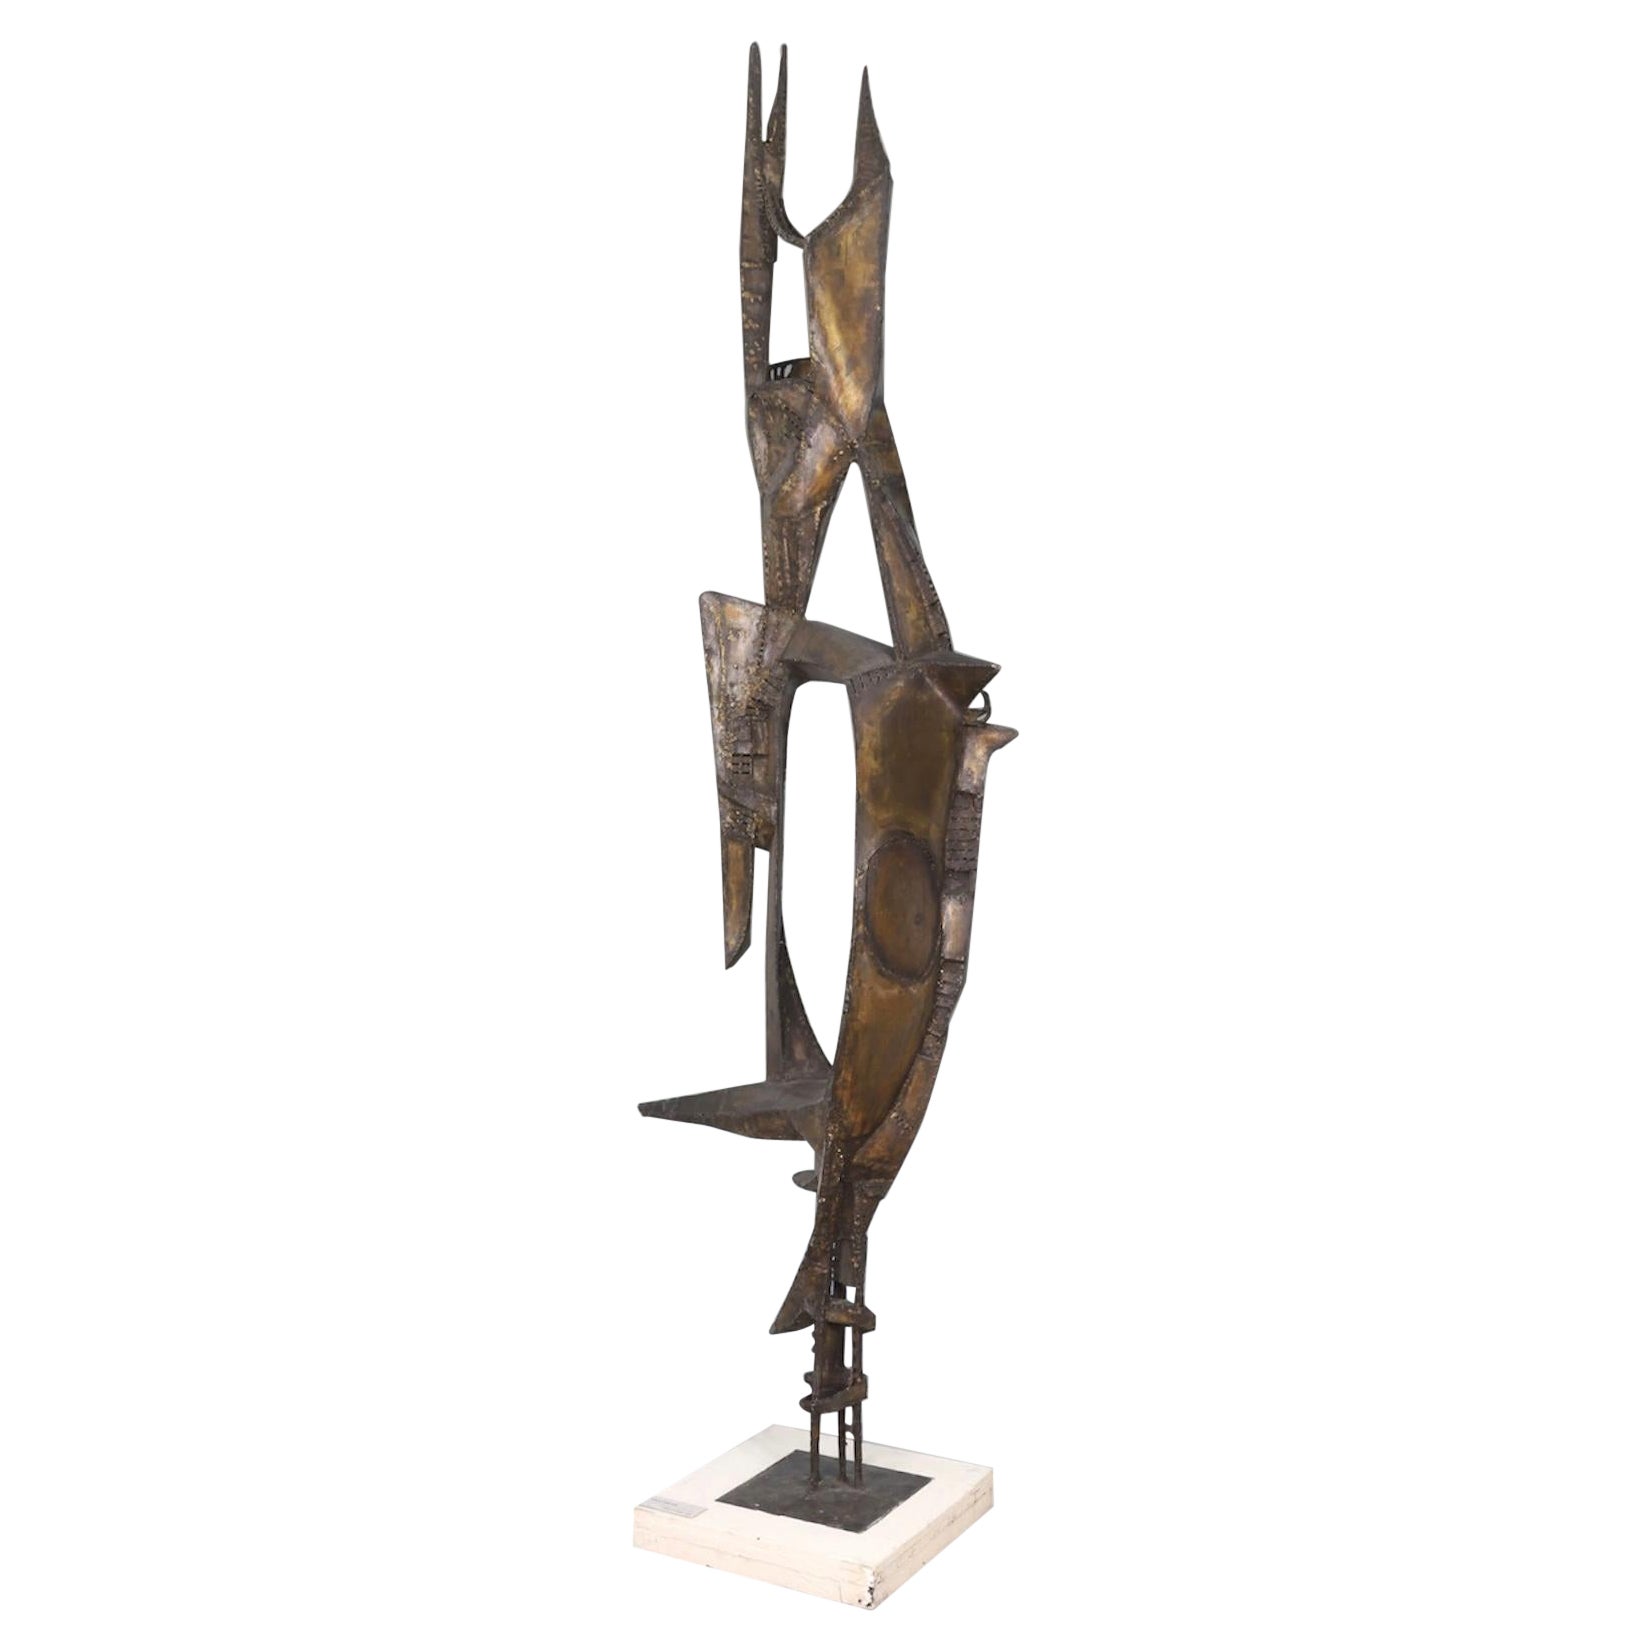 Constantine Andreou escultura monumental 280 cm